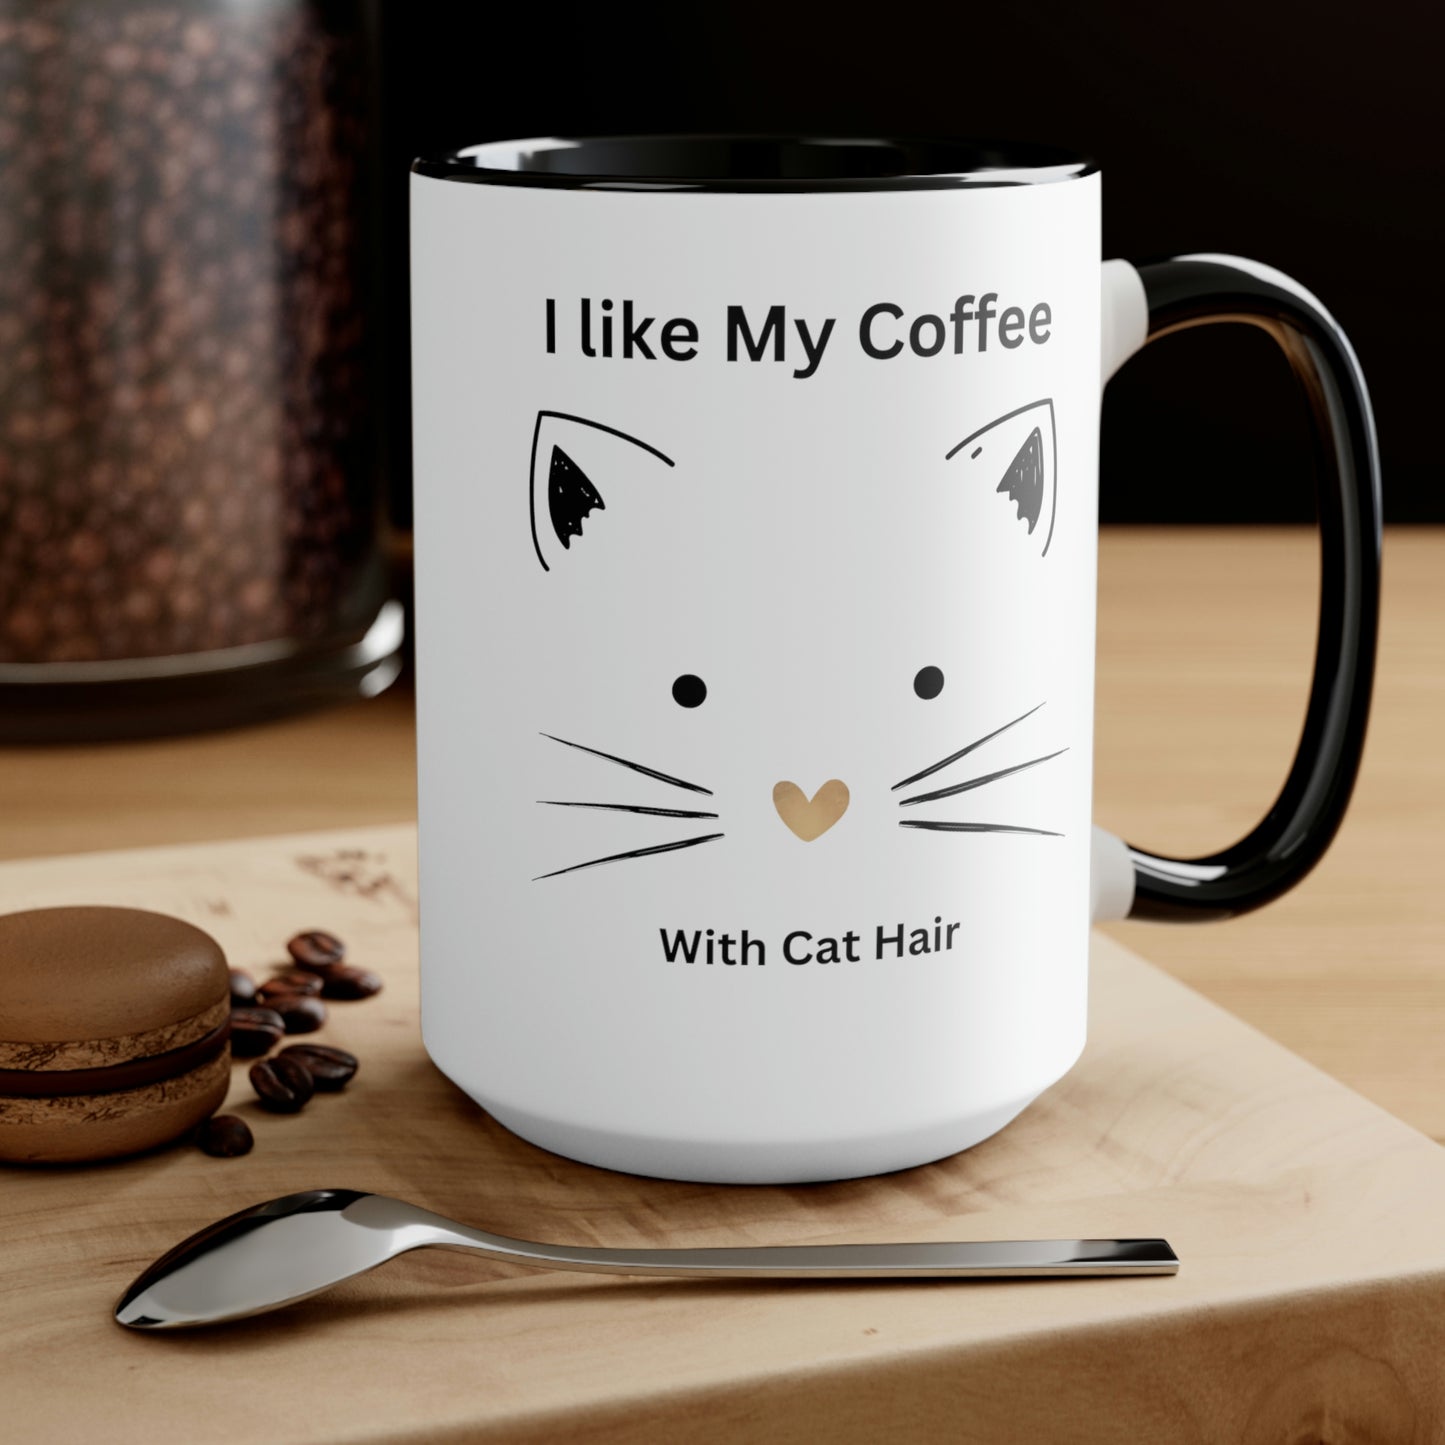 MarshLife by Shani Accent Mug - Cat Hair